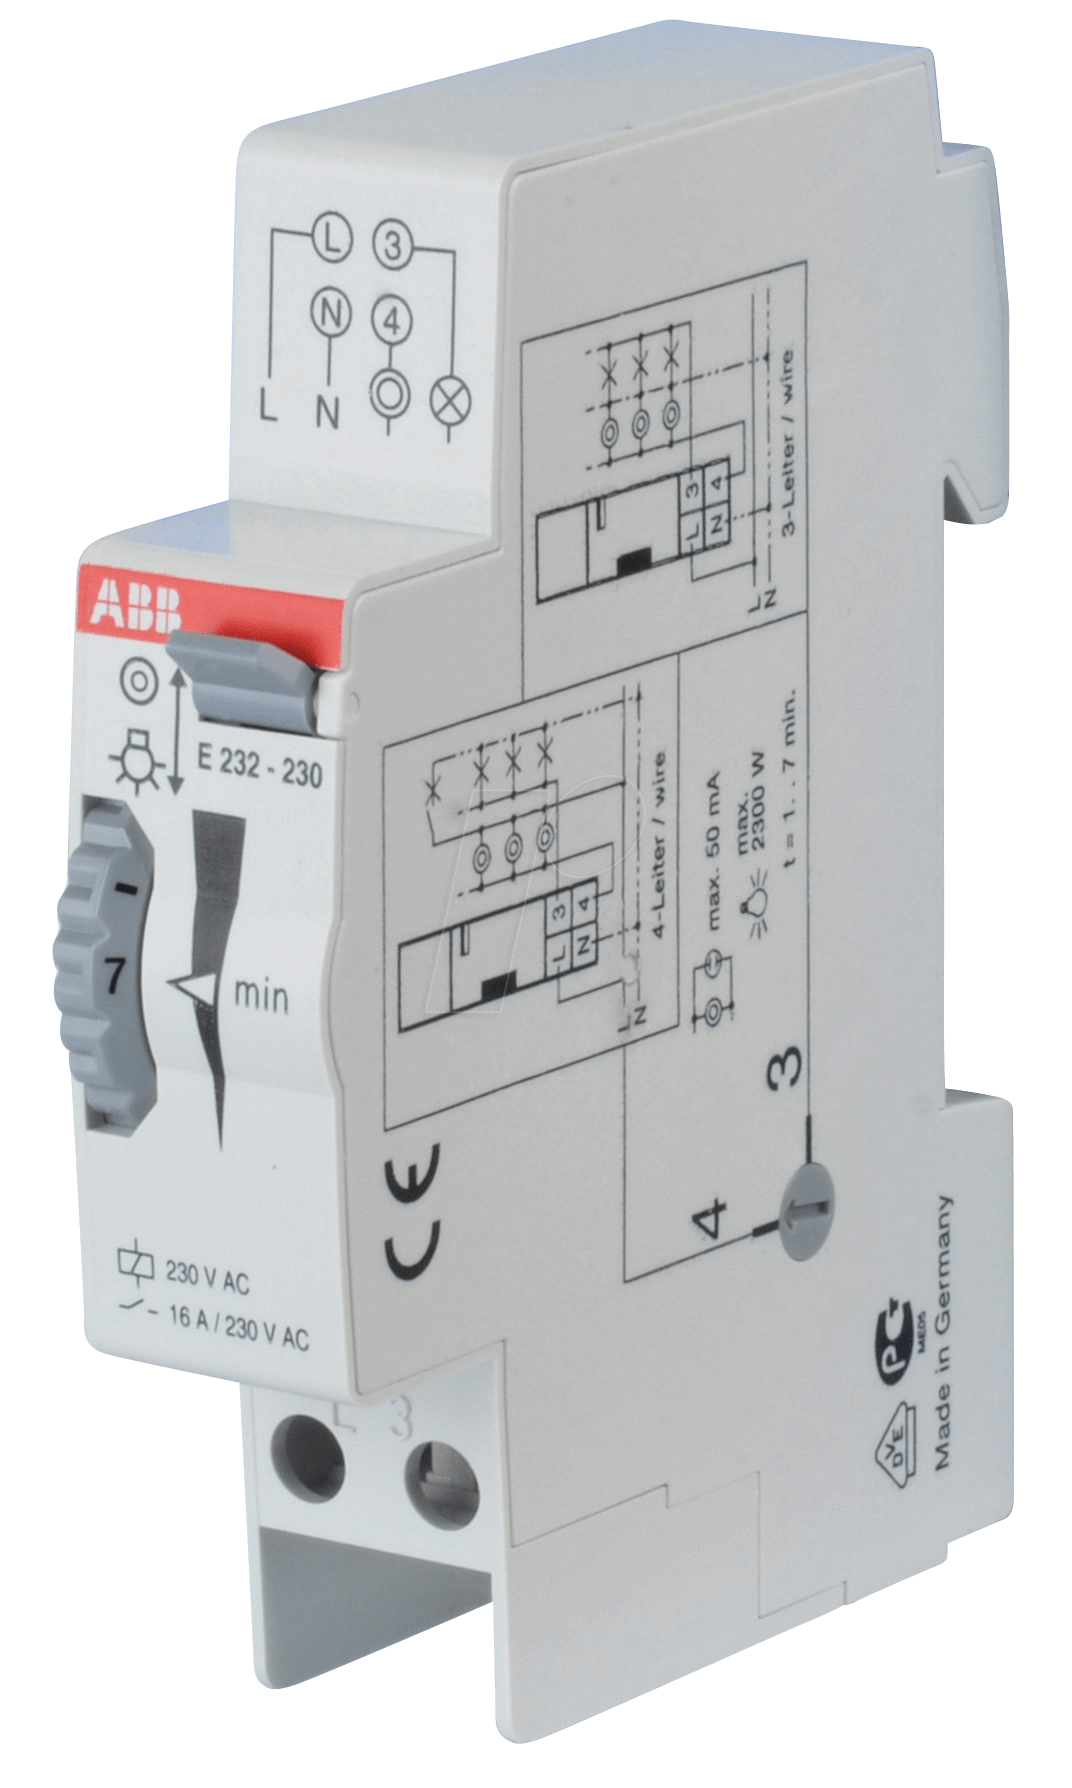 ABB E232-230: Interruttore temporizzato luce scale - 230 V, 1-7 min da  reichelt elektronik